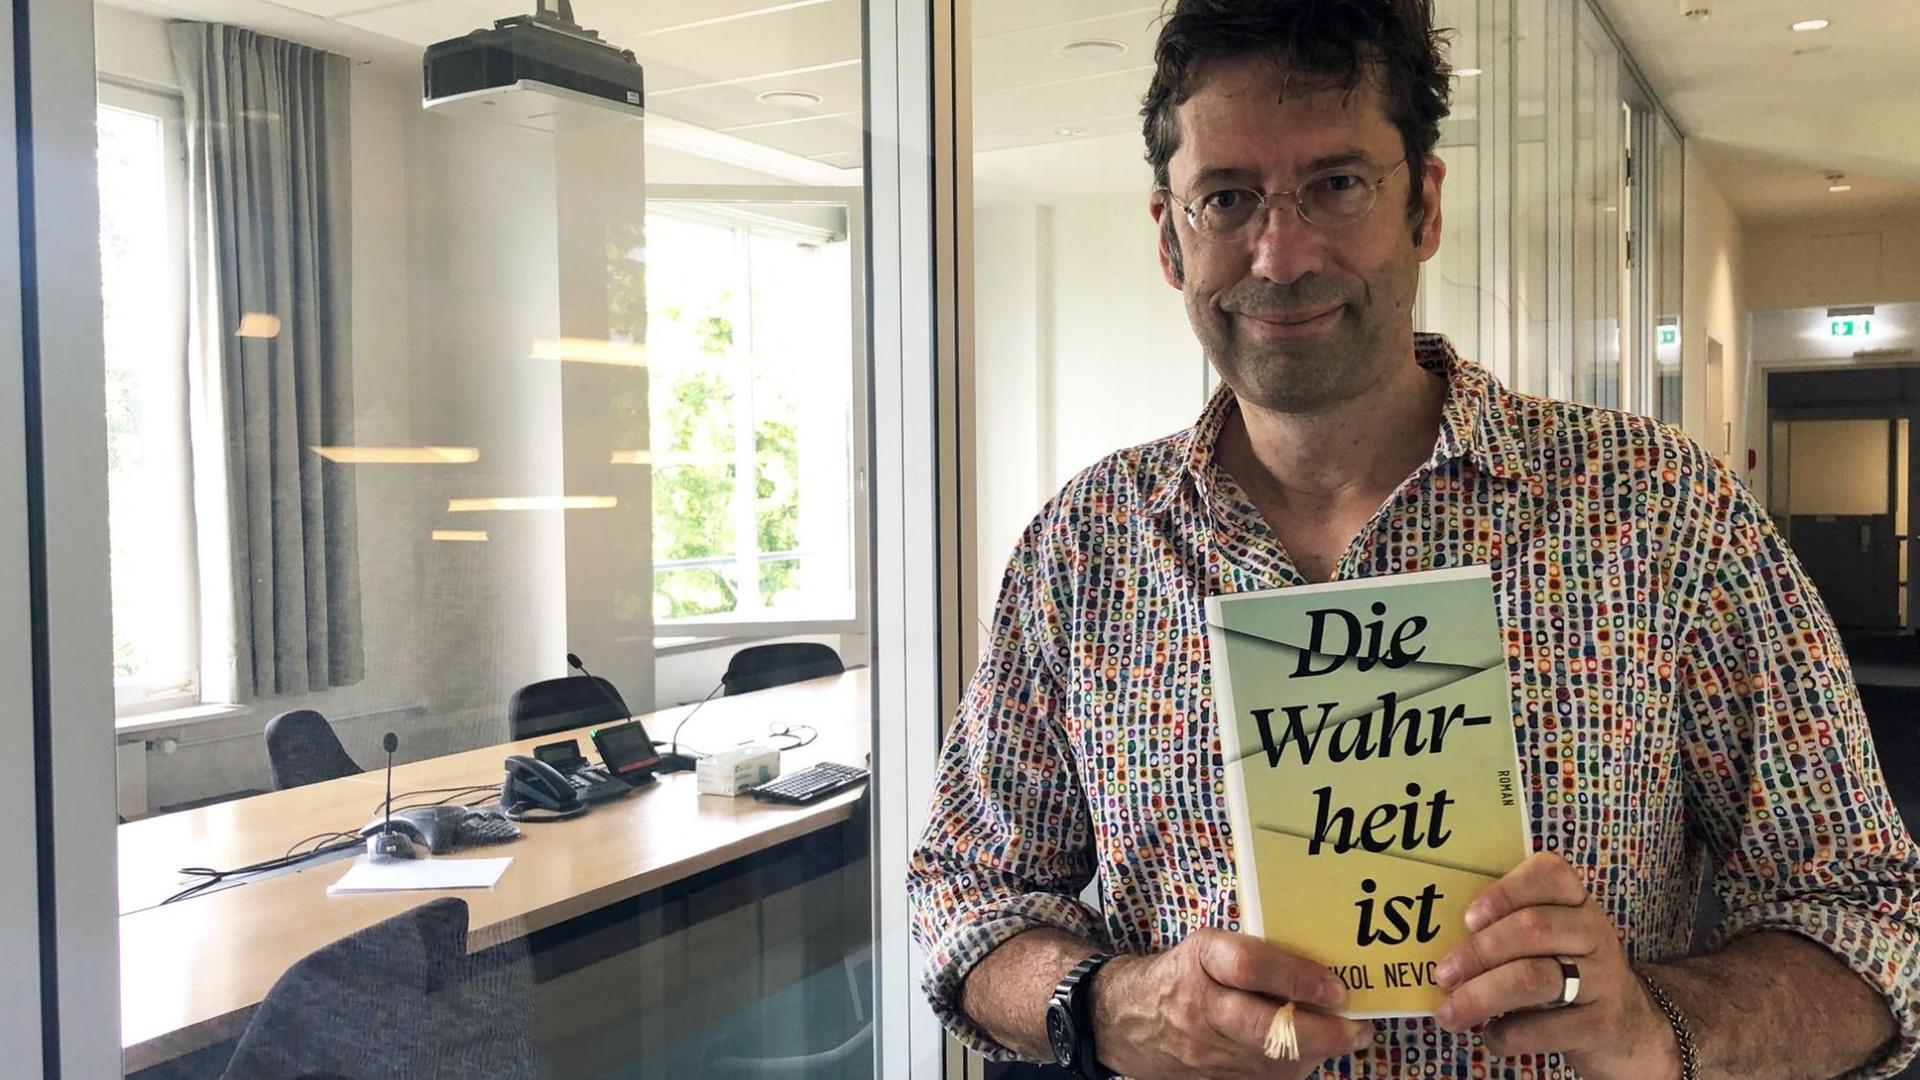 "Lesart"-Redakteur Carsten Hueck steht mit dem Buch "Die Wahrheit ist" von Eshkol Nevo im Gebäude von Deutschlandfunk Kultur.